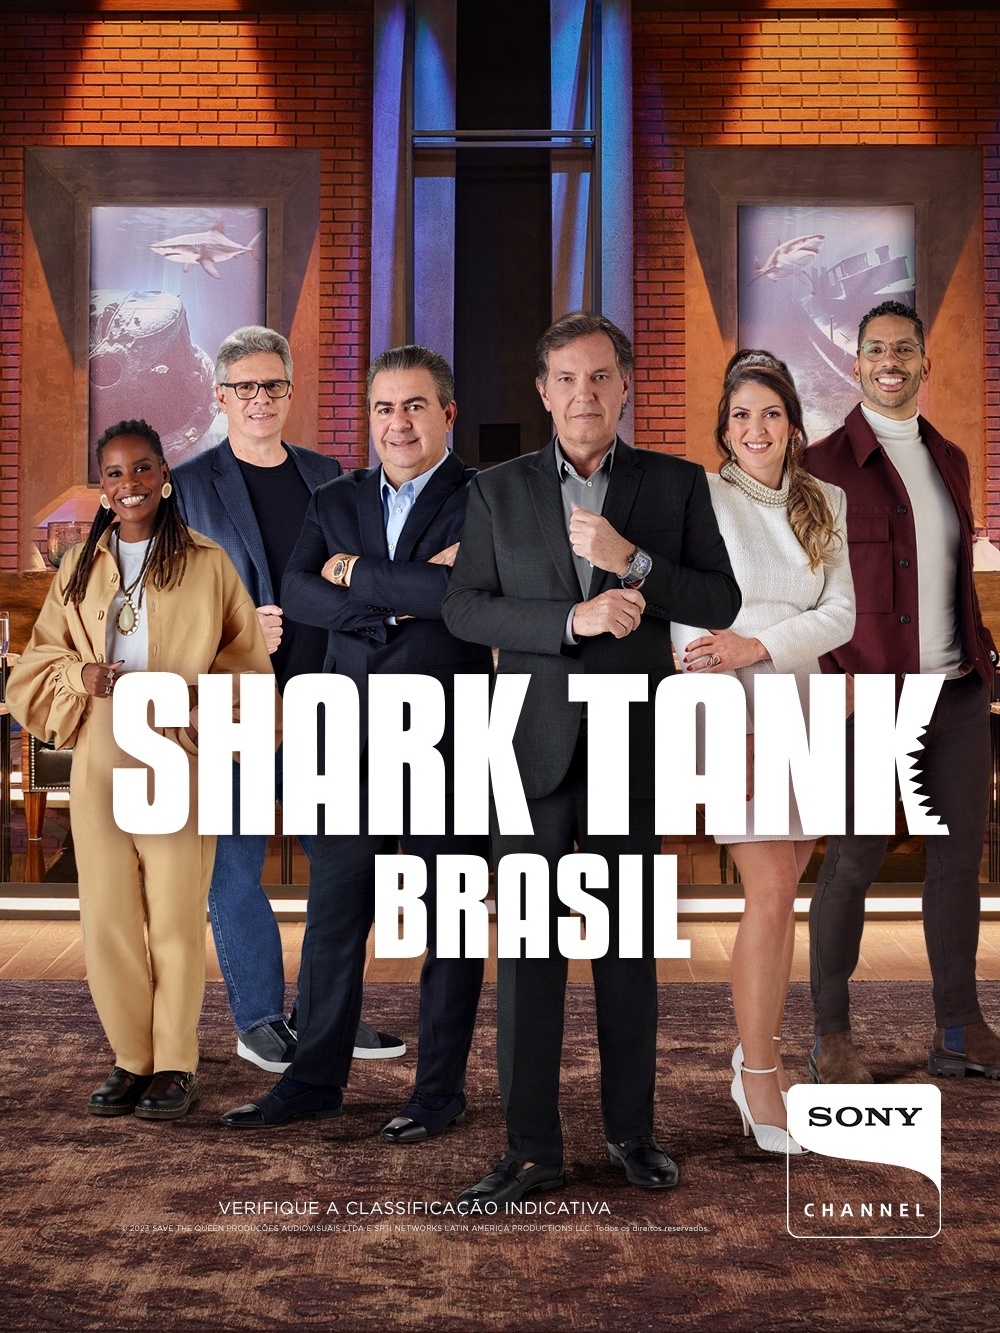 Shark Tank Brasil 8ª Temporada: Novos negócios inovadores e personalizados  — Eightify